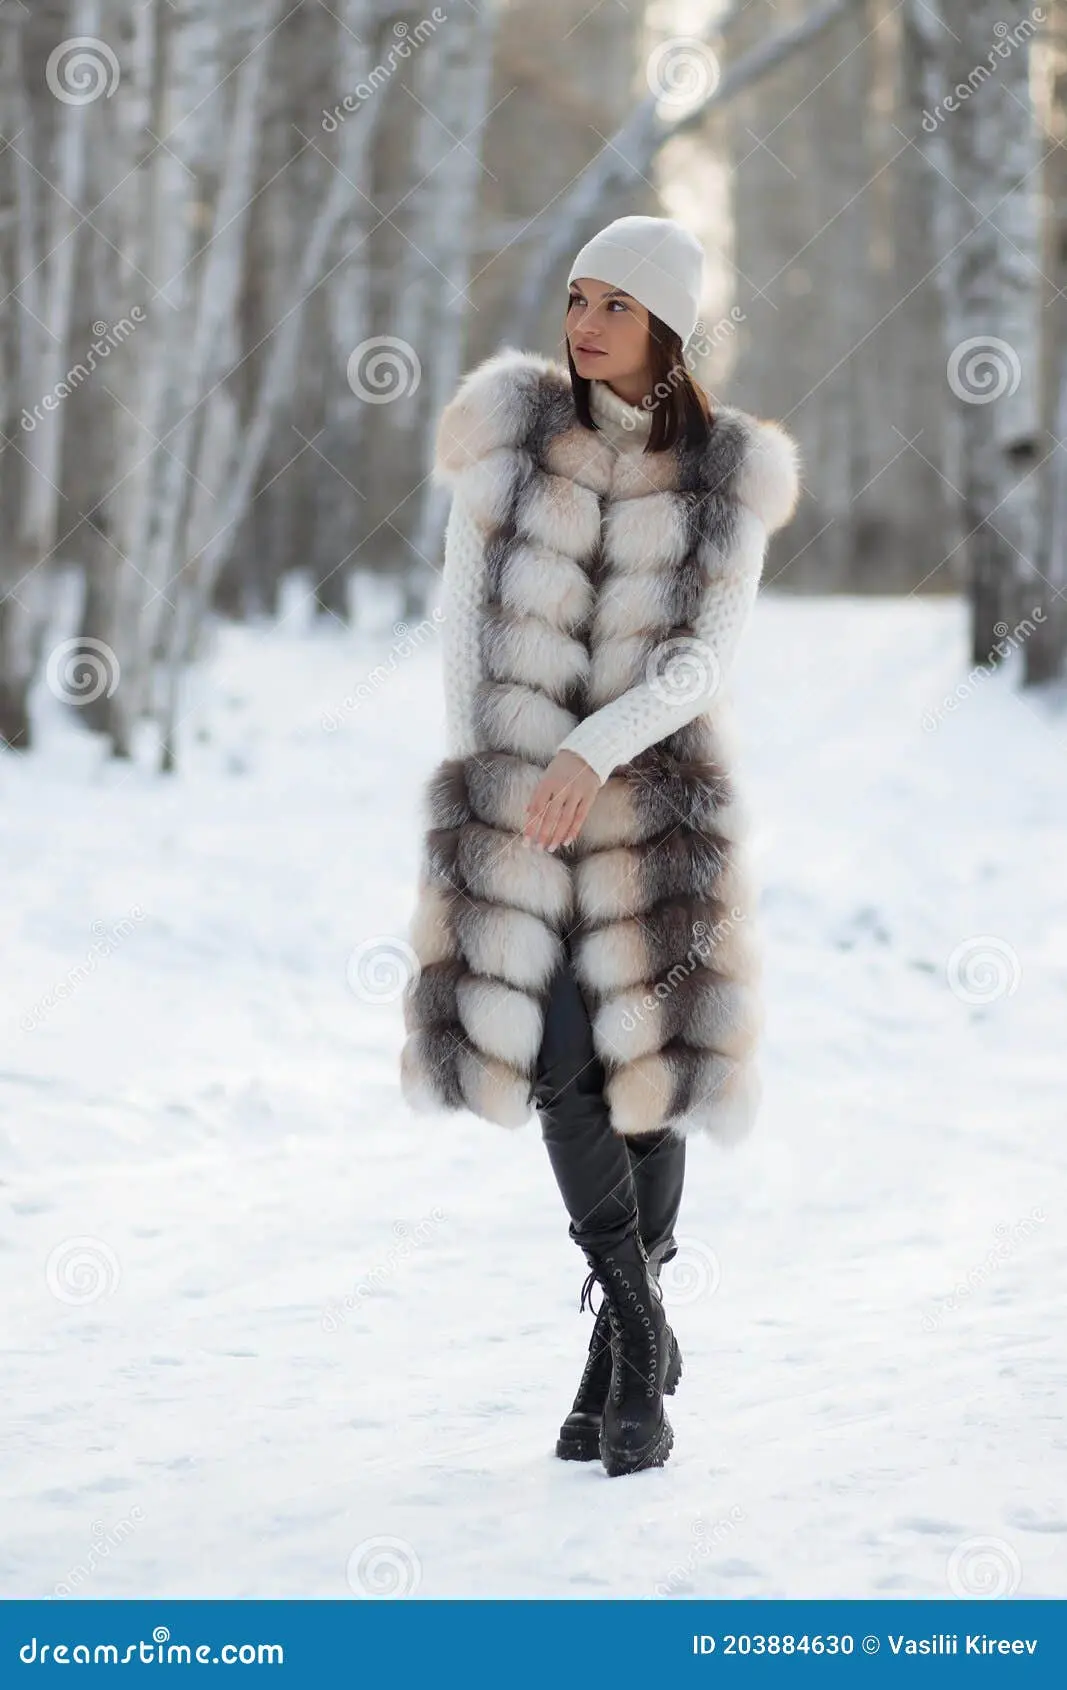 ropa de invierno - Qué tipo de ropa se utiliza en invierno